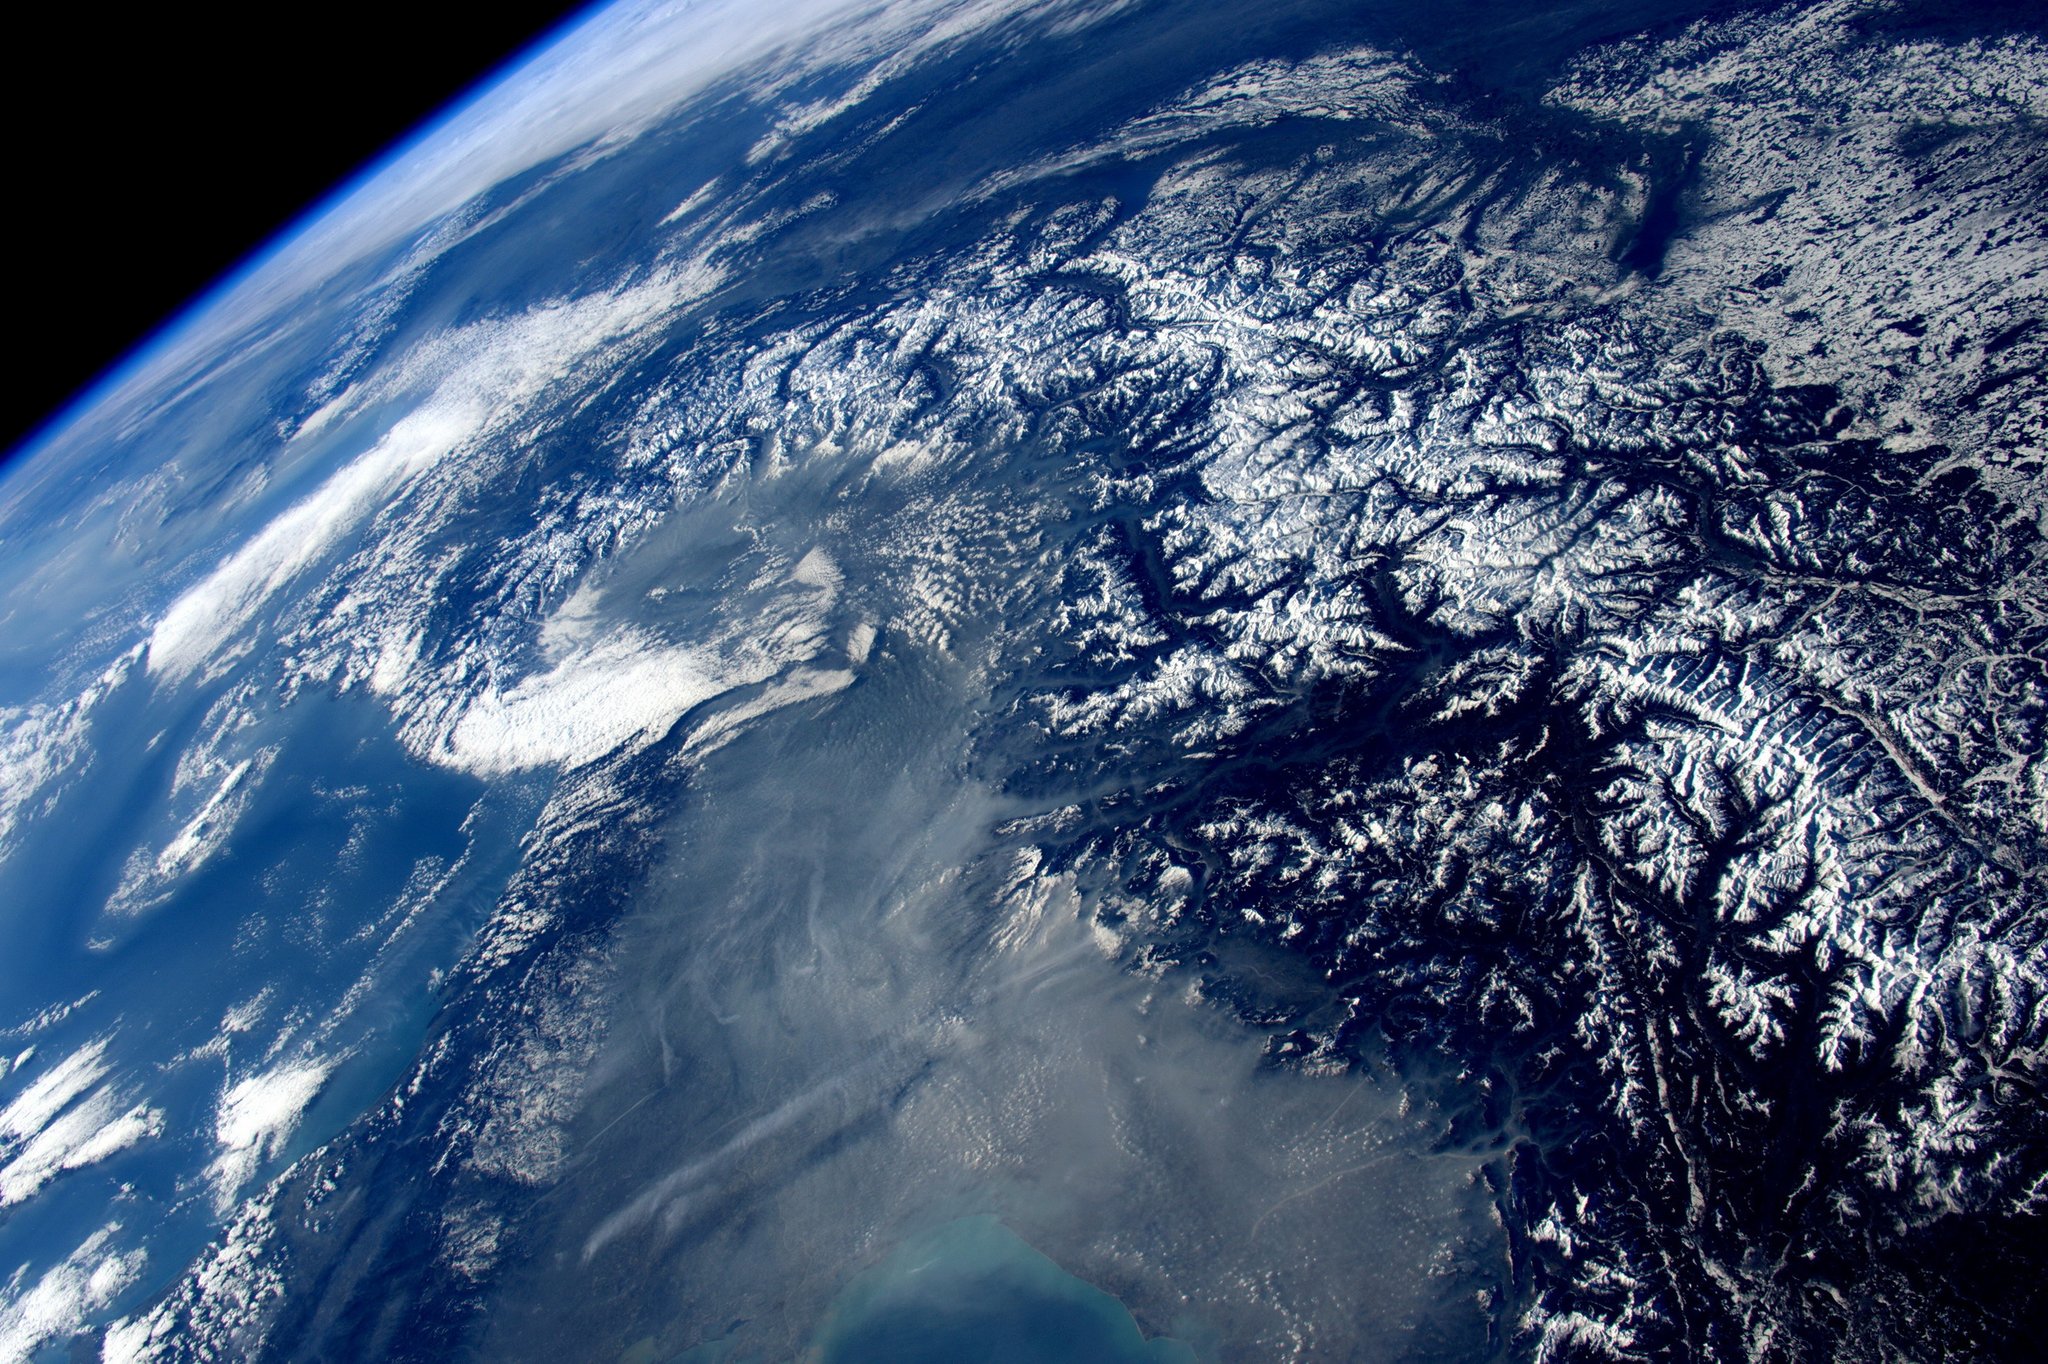 Фото евразии из космоса